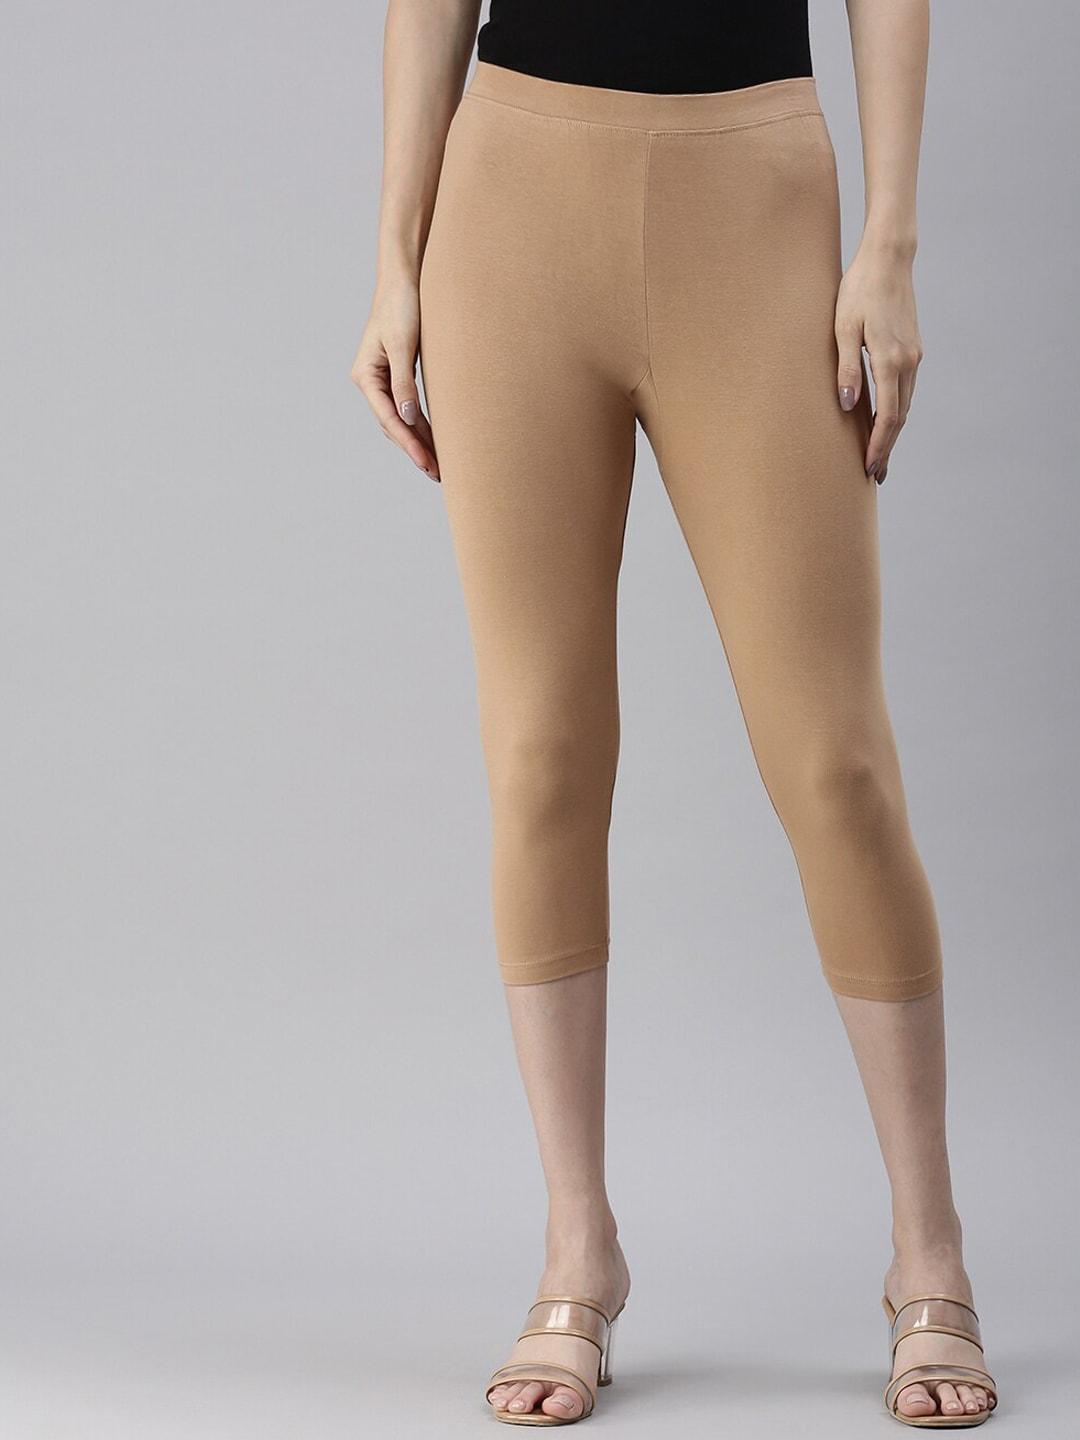 kryptic mid-rise cotton capri leggings